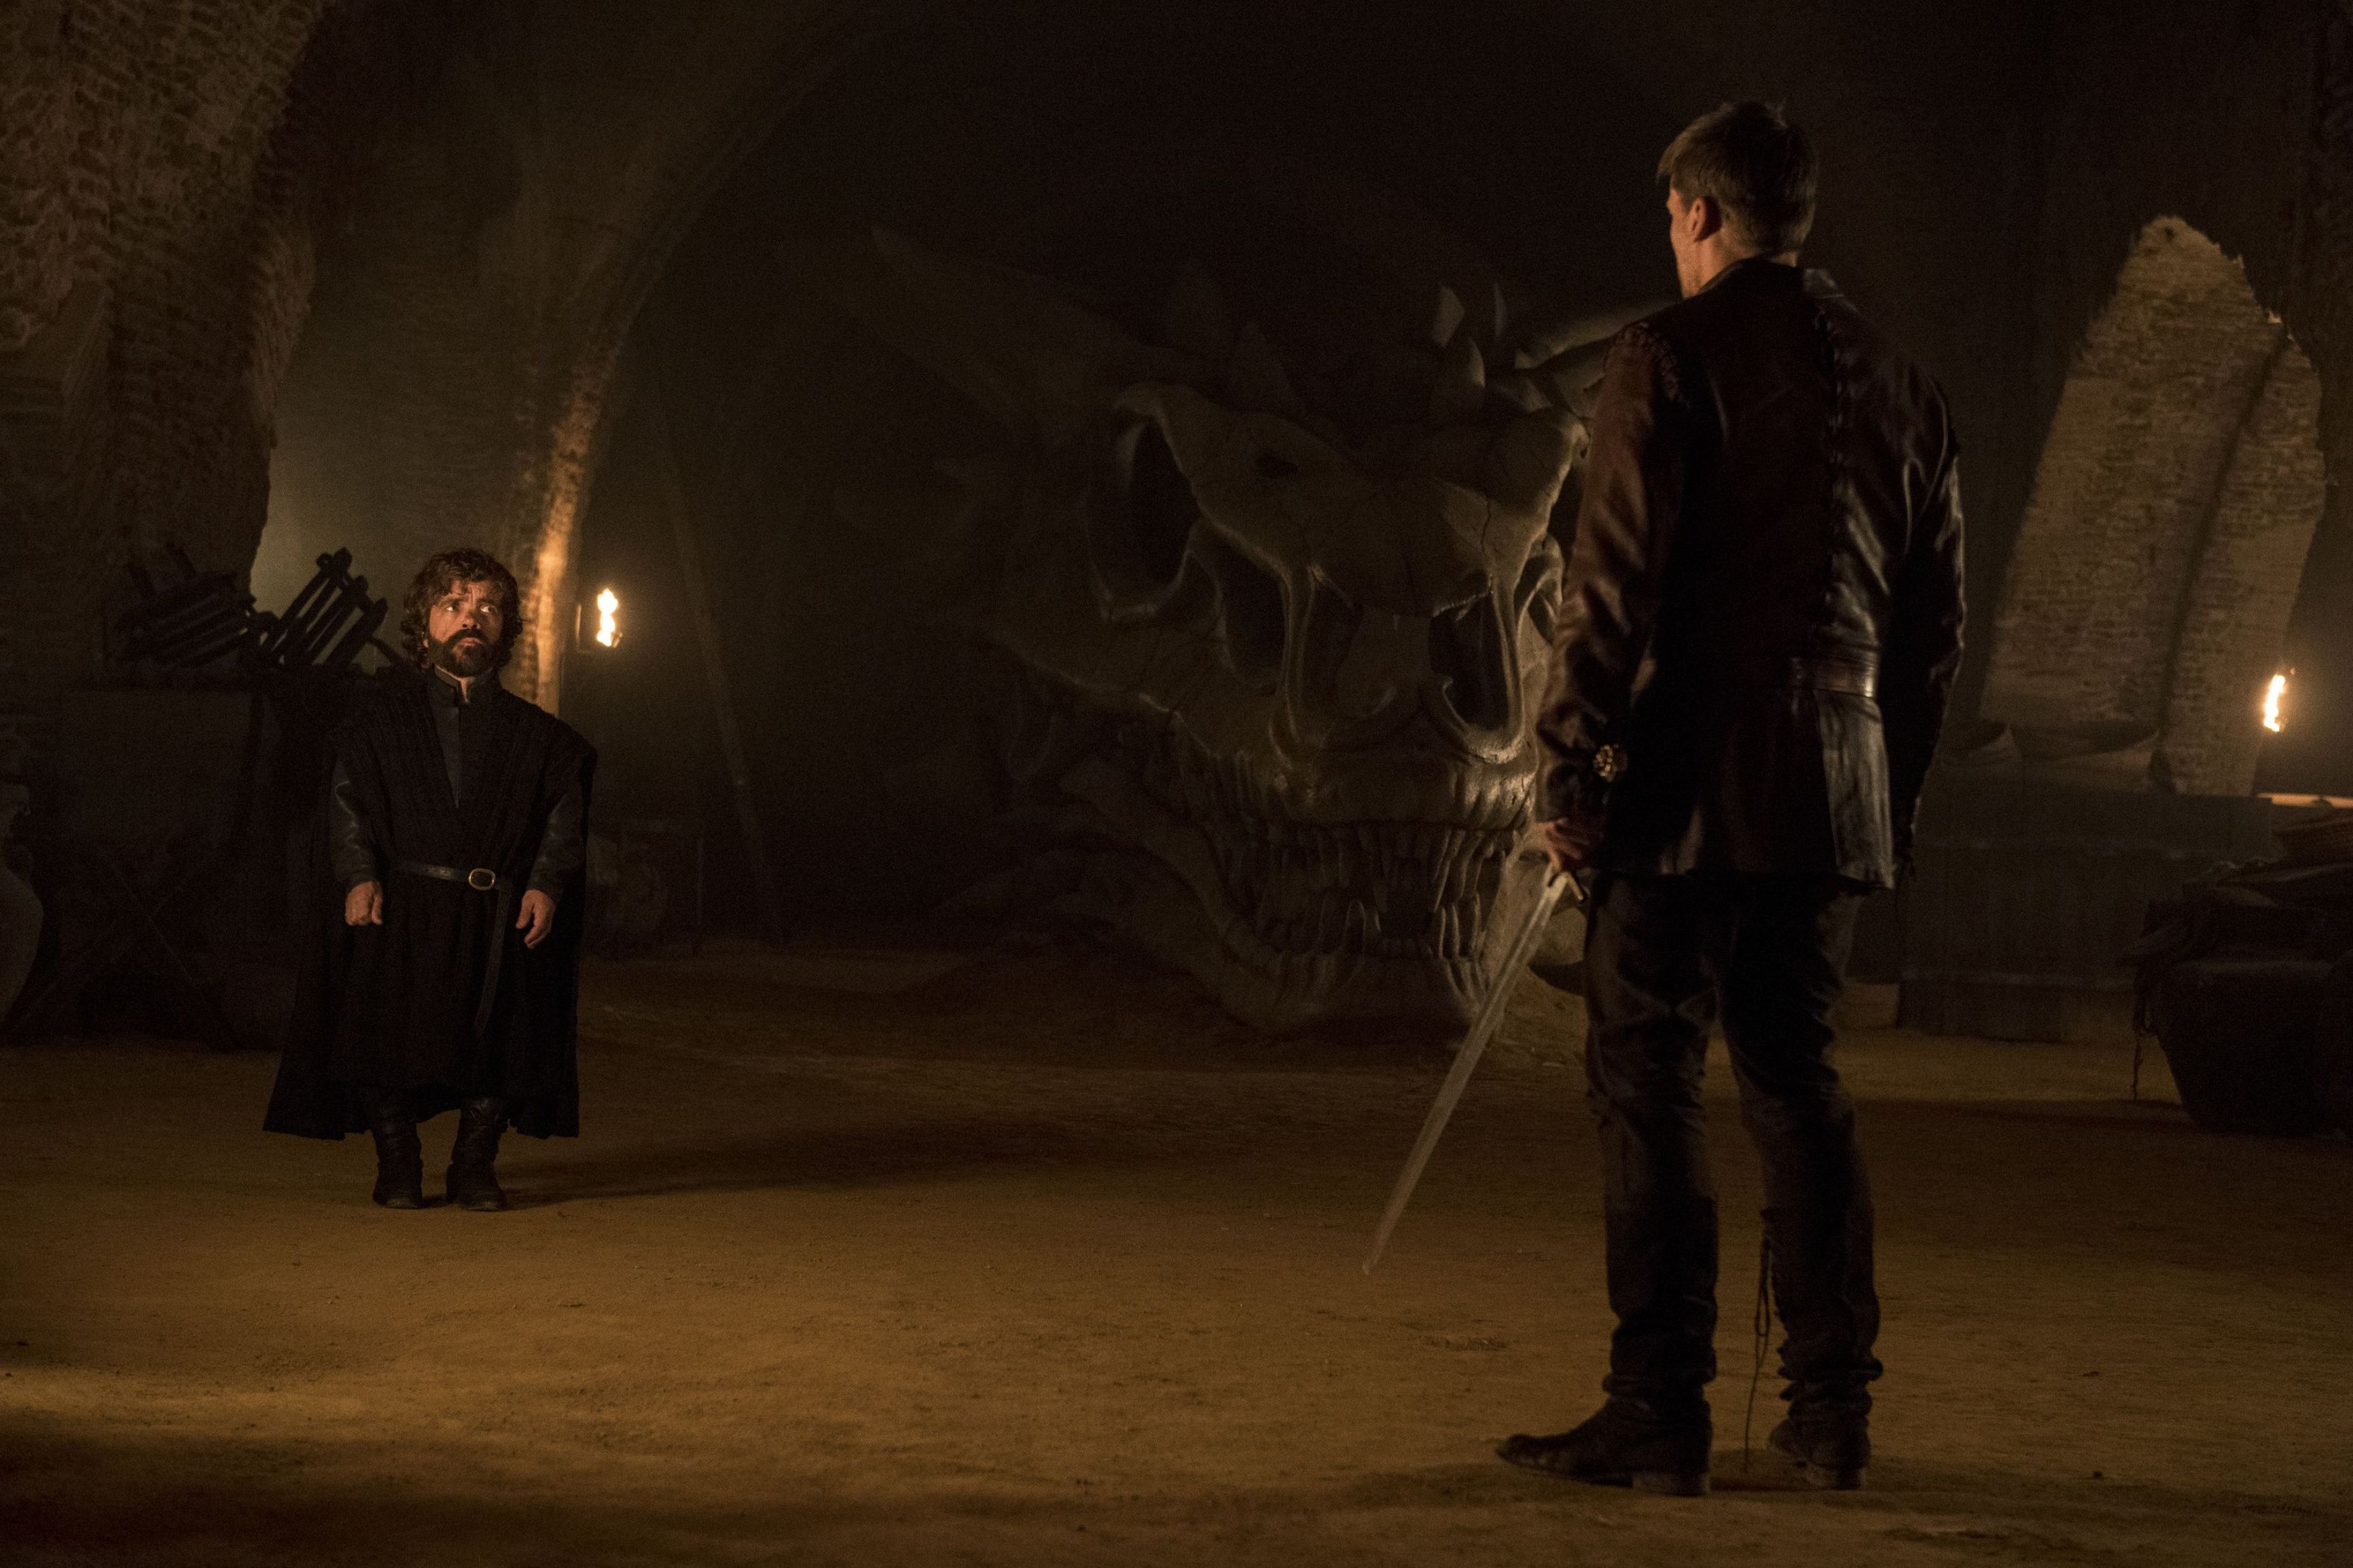 Peter Dinklage and Nikolaj Coster-Waldau in 'Game of Thrones' season 7. (HBO/Kobal/REX/Shutterstock)